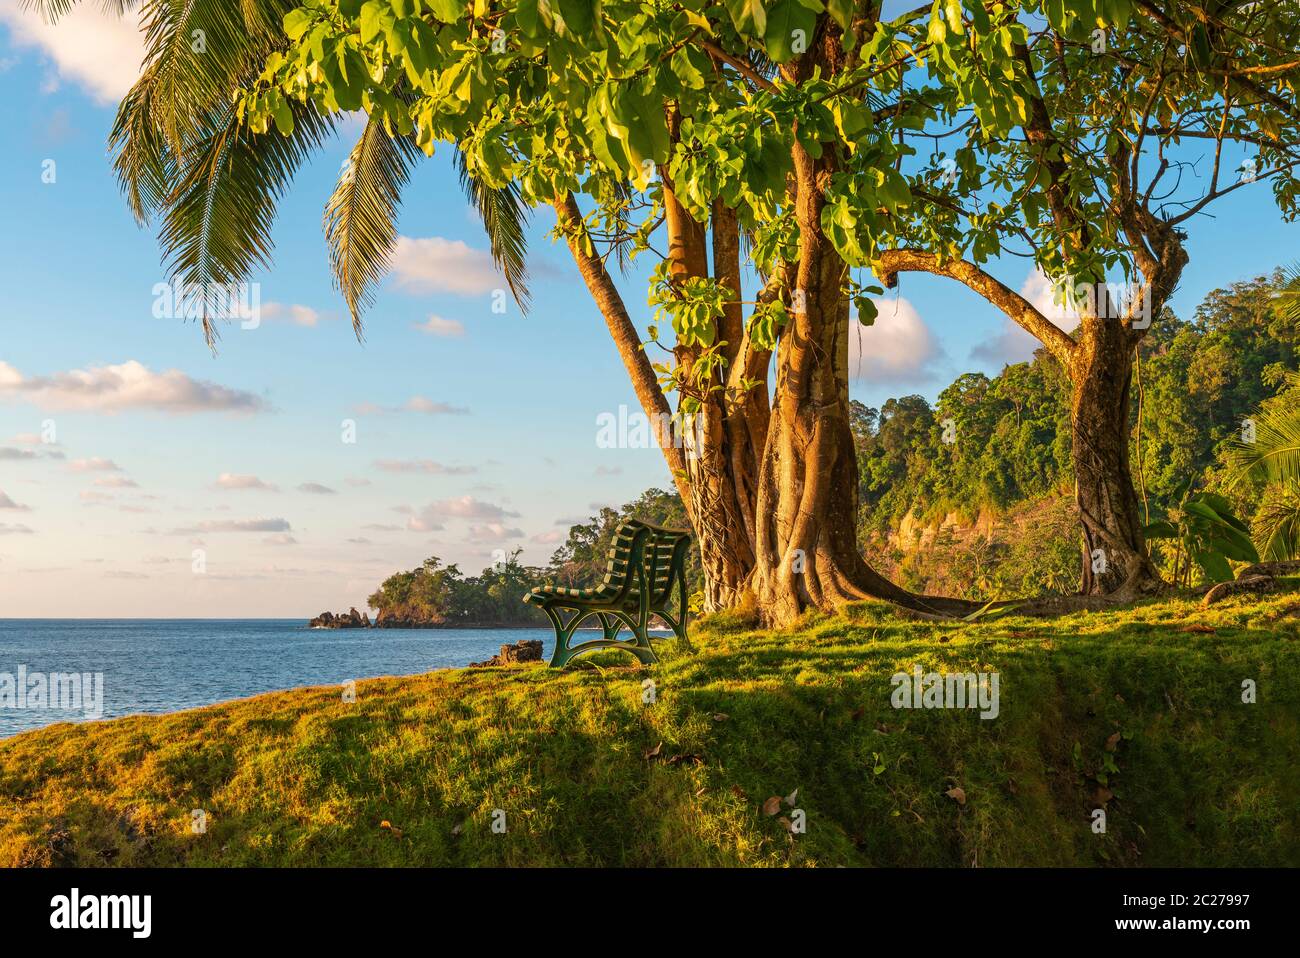 Banc vide sous un arbre tropical au coucher du soleil près de la forêt tropicale humide de l'océan Pacifique, parc national du Corcovado, péninsule d'Osa, Costa Rica. Banque D'Images